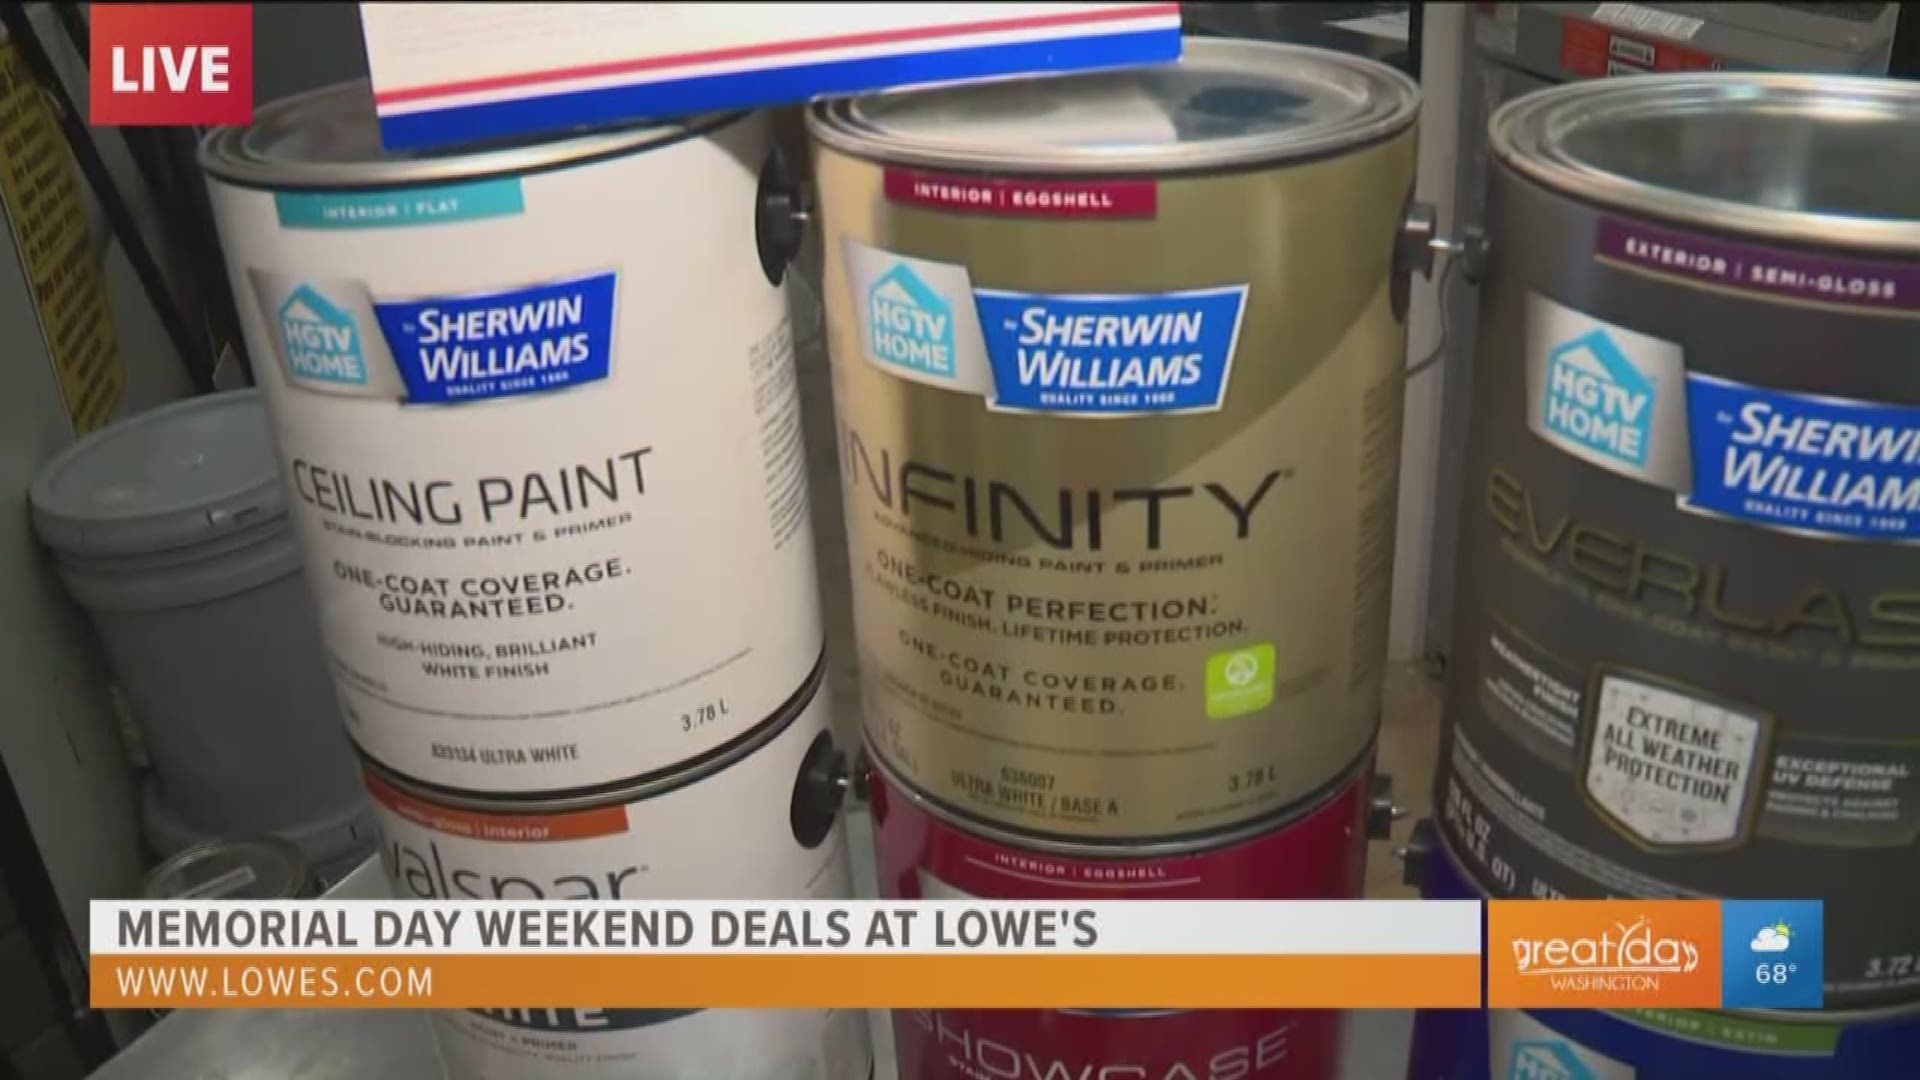 get-huge-rebate-savings-on-paint-at-lowe-s-memorial-day-weekend-sales